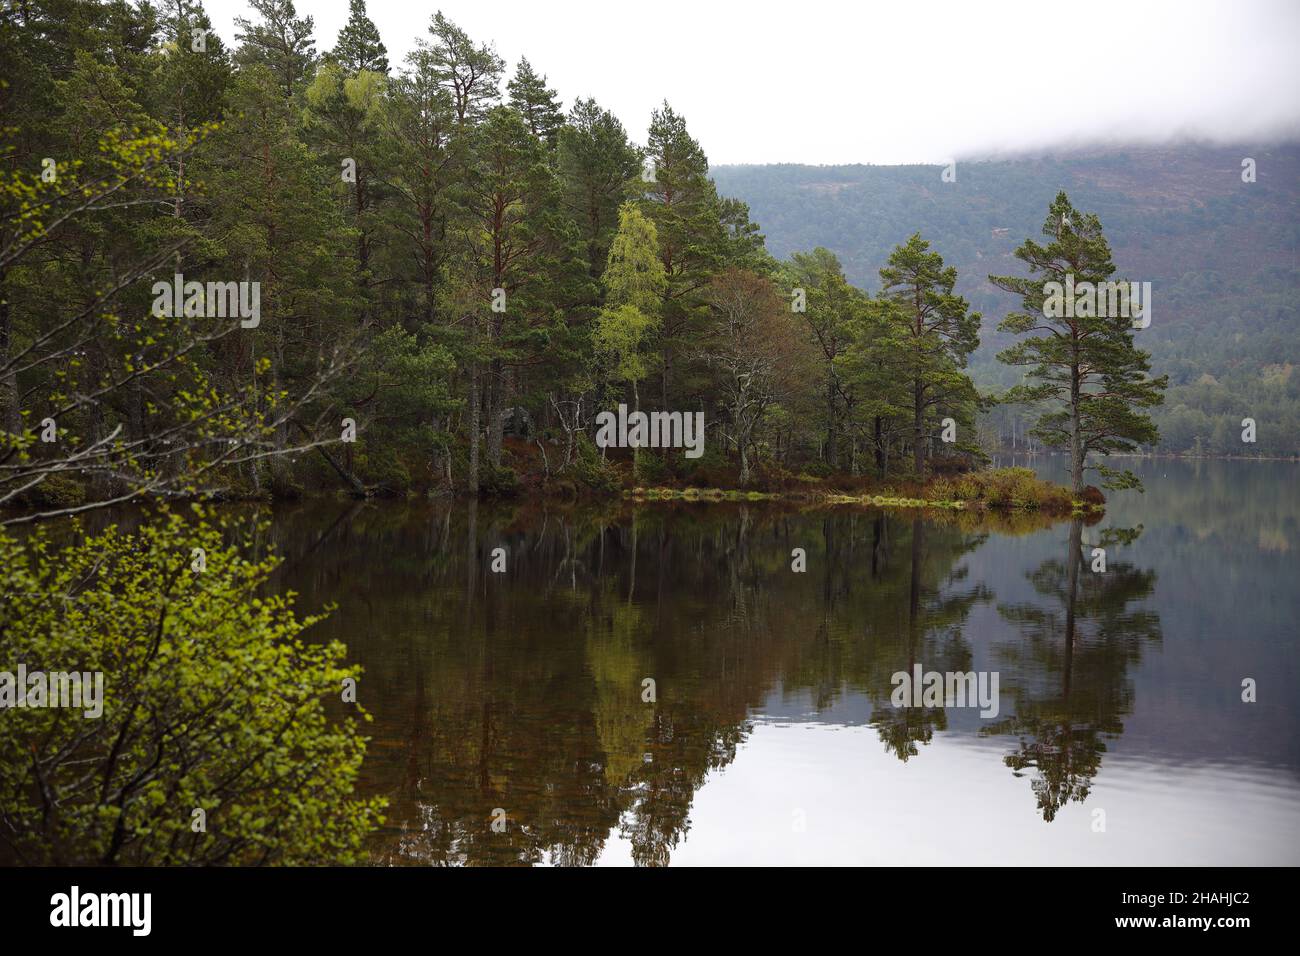 Loch an Eilein, Rothiemurchus, Aviemore, Scotland Stock Photo